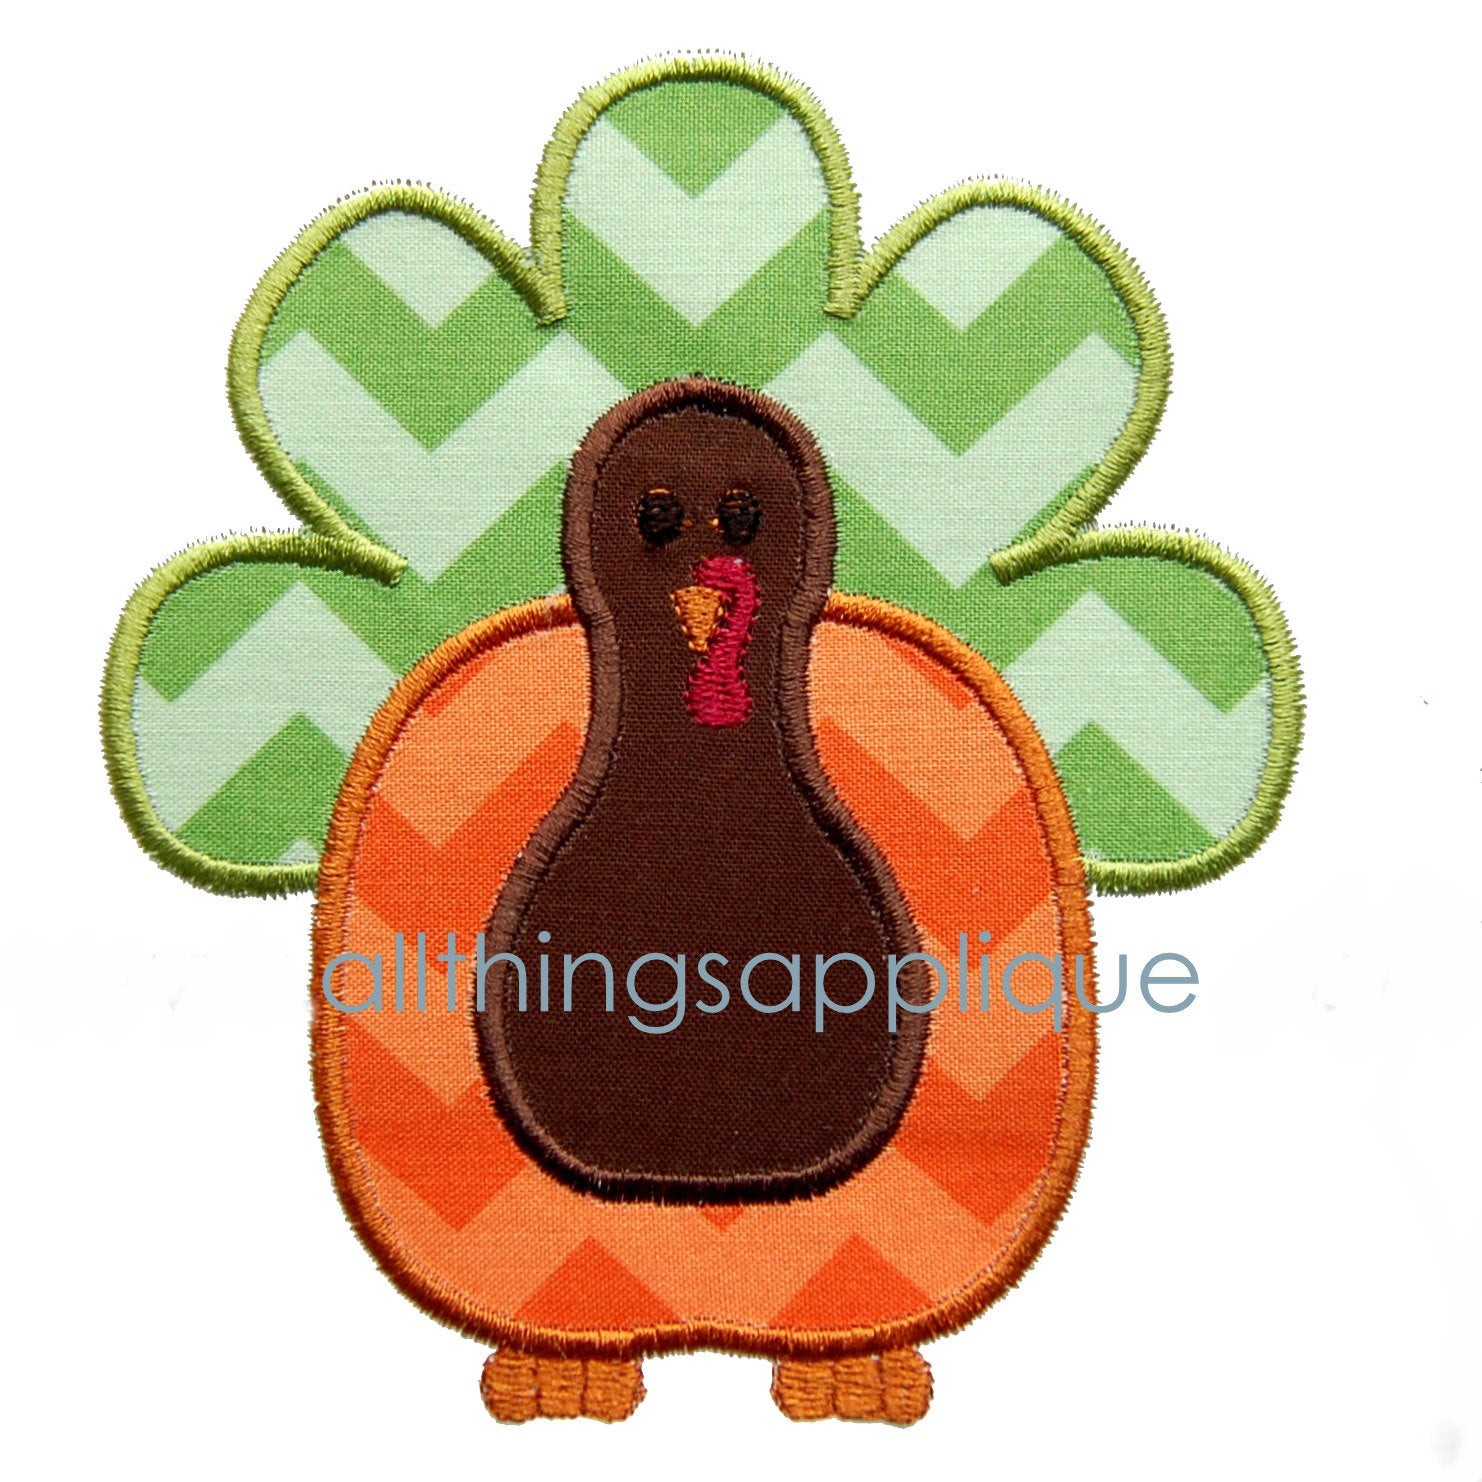 Thanksgiving Applique Design
 Pumpkin Turkey Applique Design Thanksgiving Applique 3